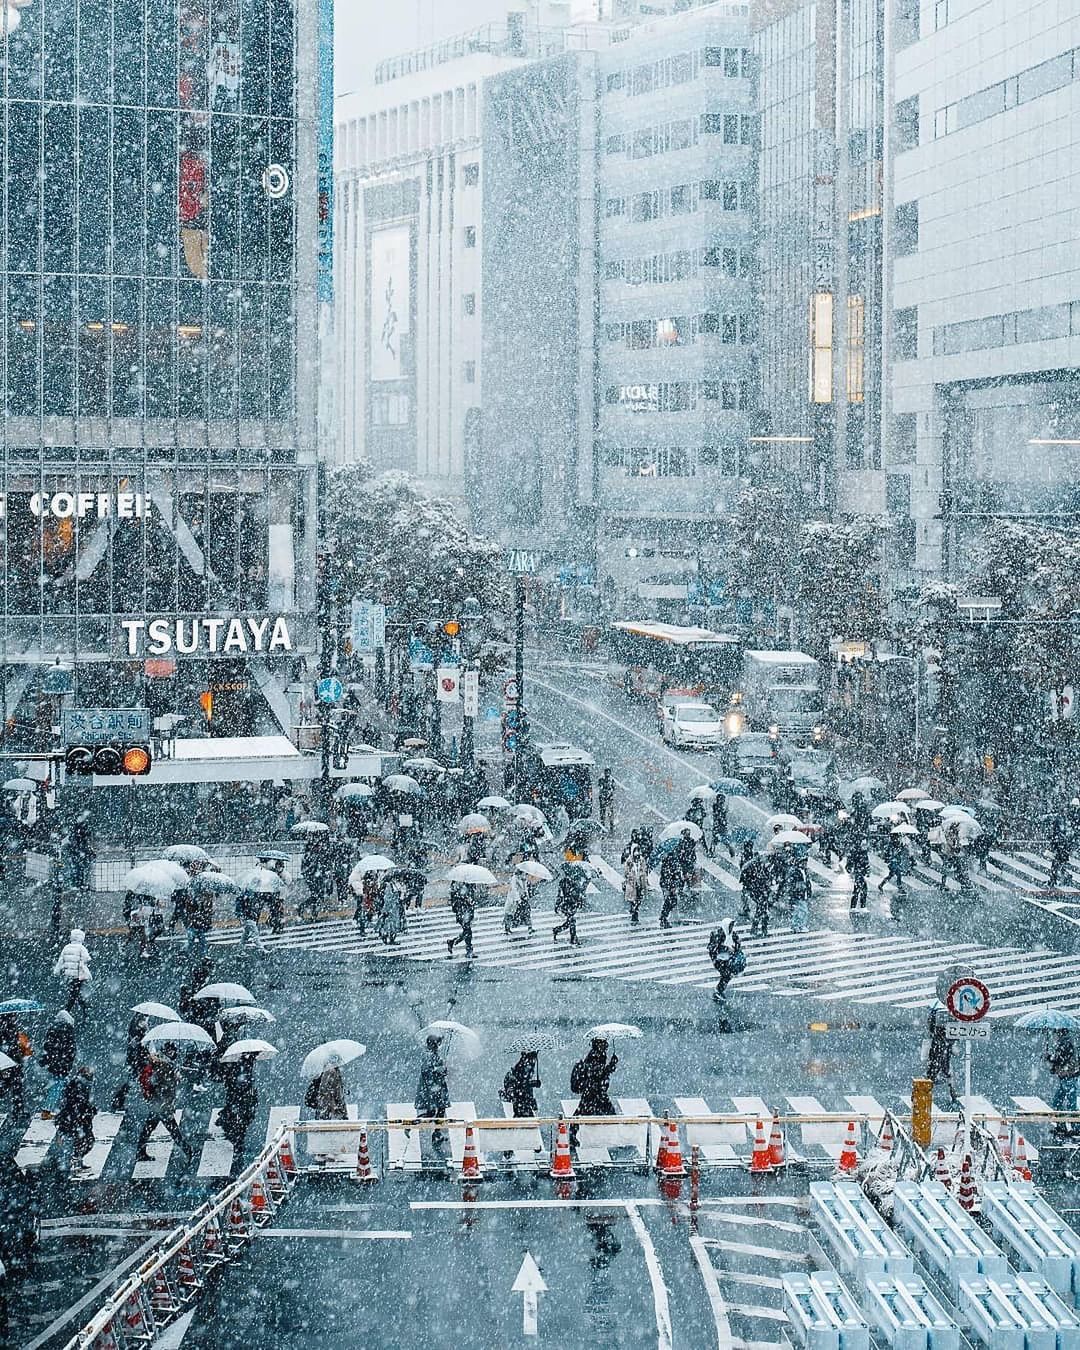 Thành phố Tokyo mang một vẻ đẹp cổ điển, nhưng khi được phủ phủi bởi lớp tuyết trắng, nó trở thành một trải nghiệm tuyệt vời hơn. Bức ảnh này sẽ đưa bạn đến với một Tokyo trắng xoá như một mơ ước đẹp đẽ.